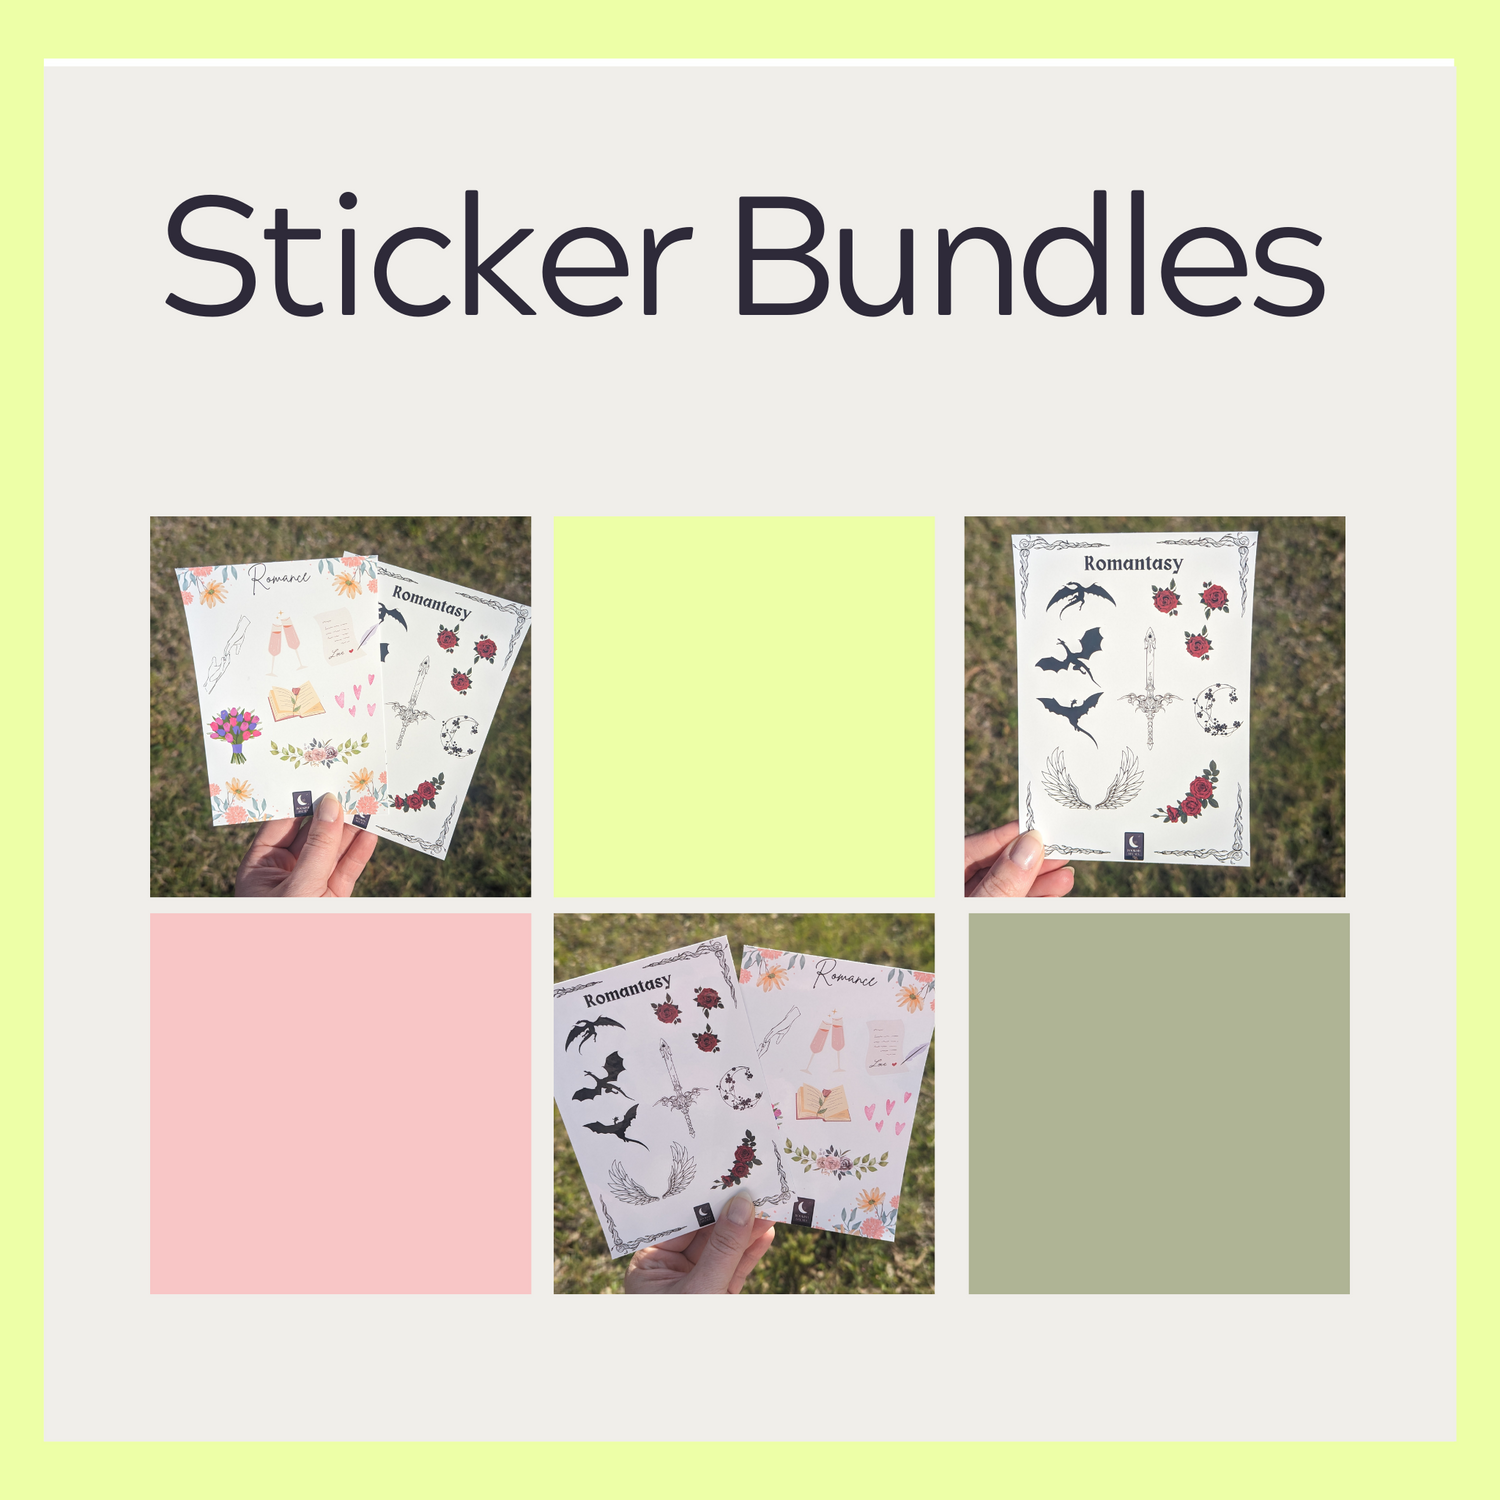 Sticker Bundles